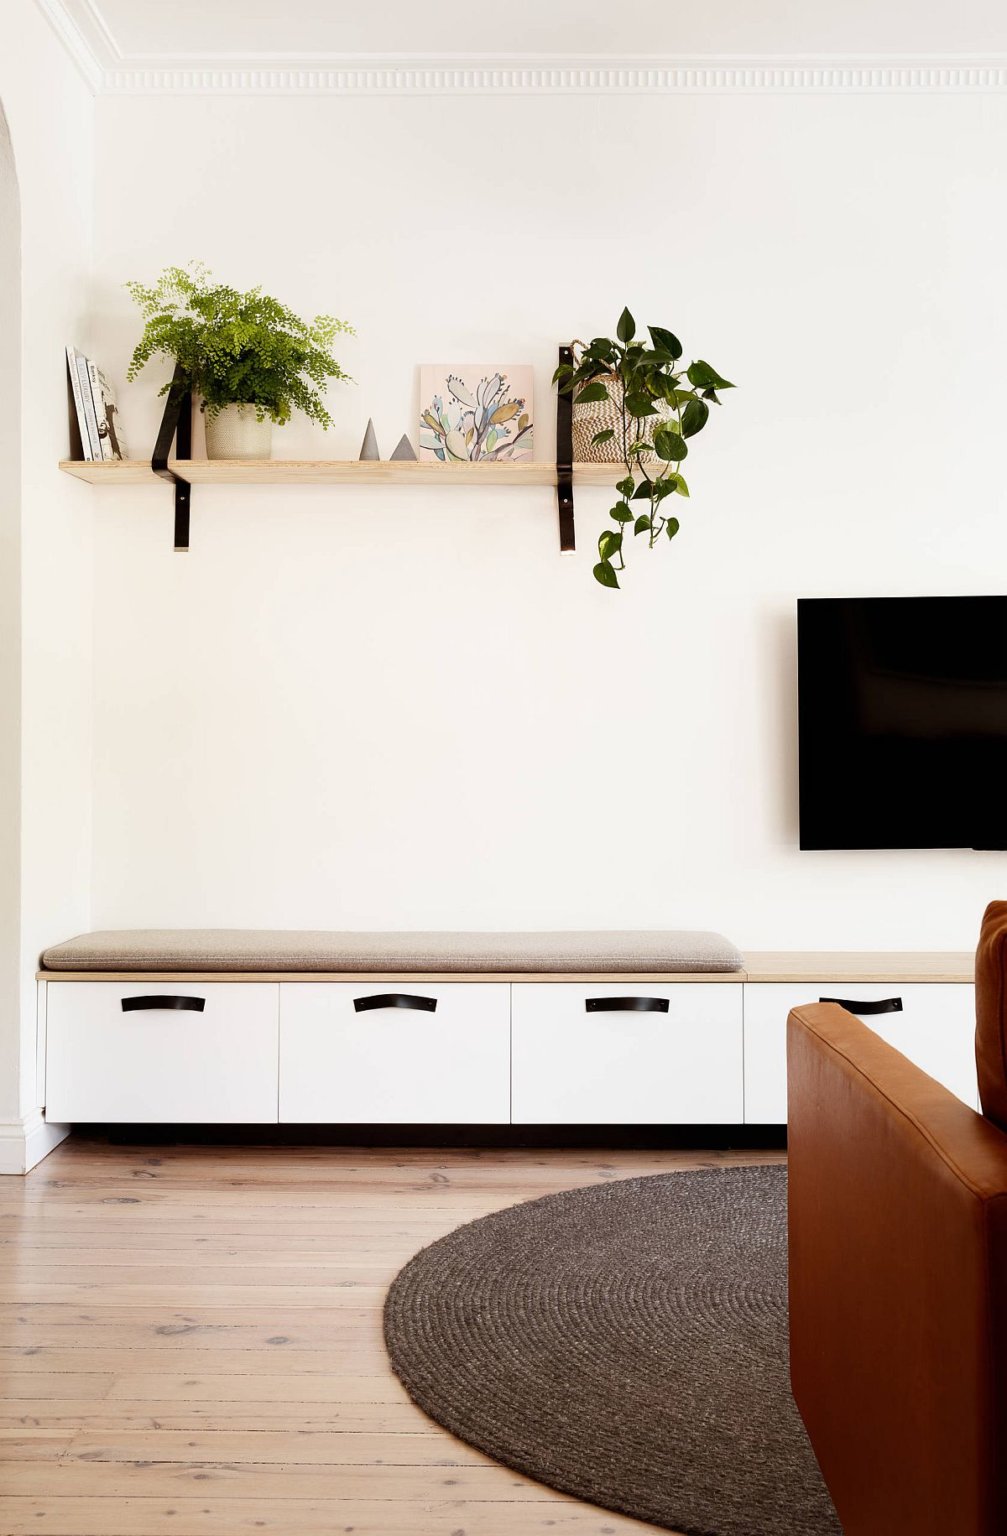 Nếu bạn đang muốn tìm ý tưởng về thiết kế phòng khách đơn giản mà tinh tế, thì không thể bỏ qua sắc trắng. Sự tinh tế của màu trắng sẽ giúp không gian nhà bạn thêm sáng và rộng rãi hơn bao giờ hết. Nhấn mạnh đến thiết kế đơn giản sẽ giúp bạn có được phòng khách vừa đẹp mắt vừa gọn gàng.